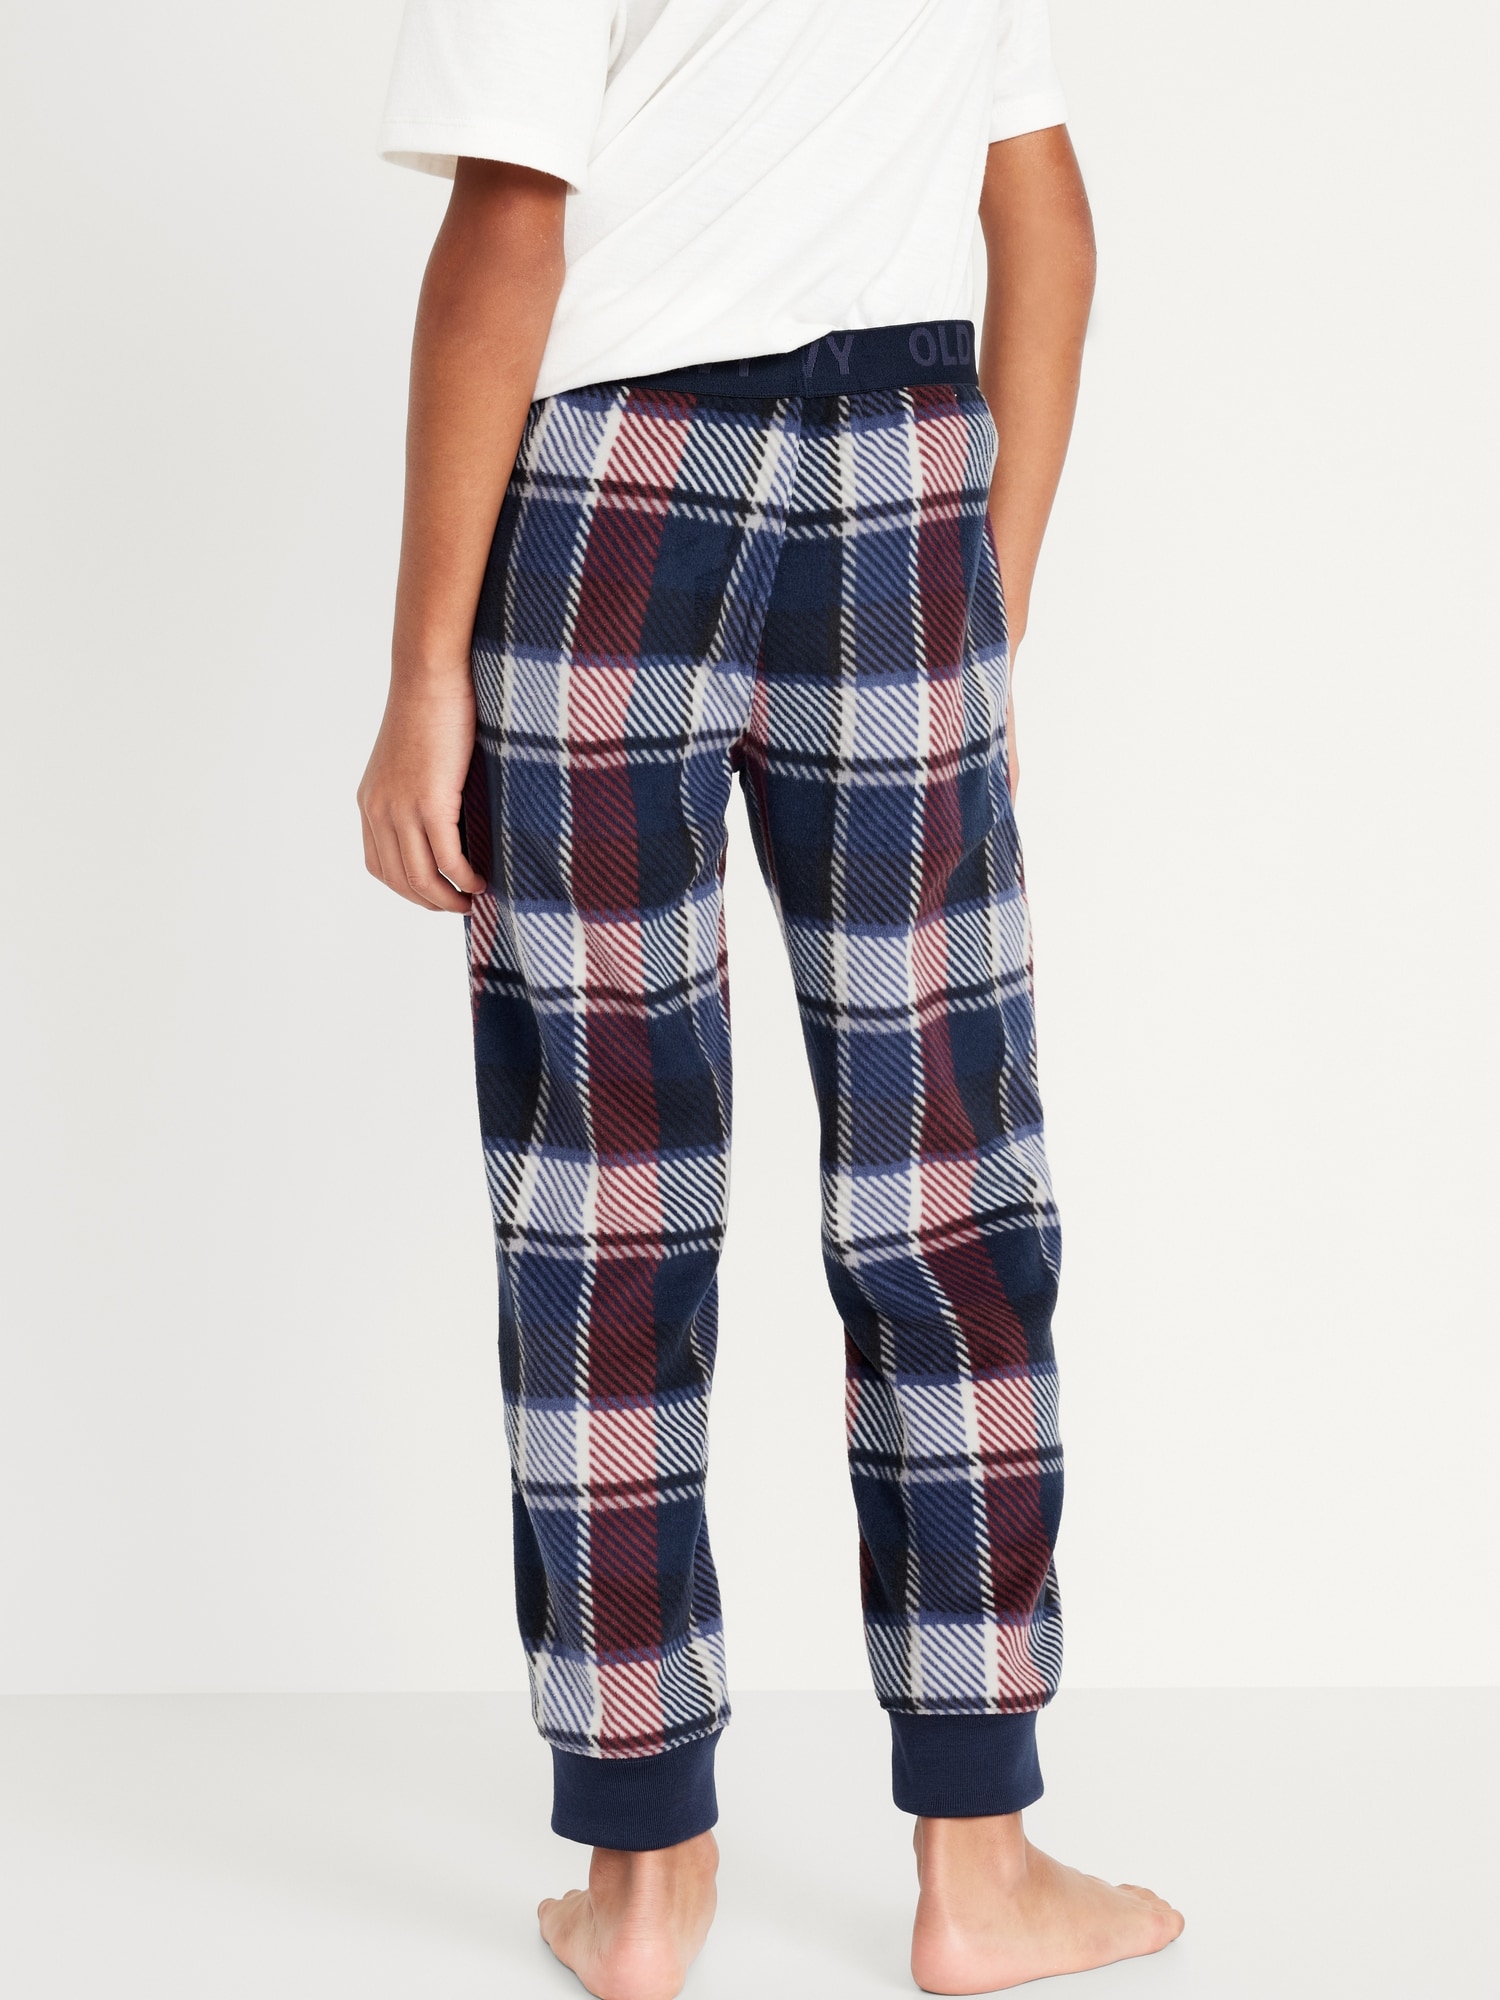 Printed Micro Fleece Pajama Jogger Pants for Boys | Old Navy